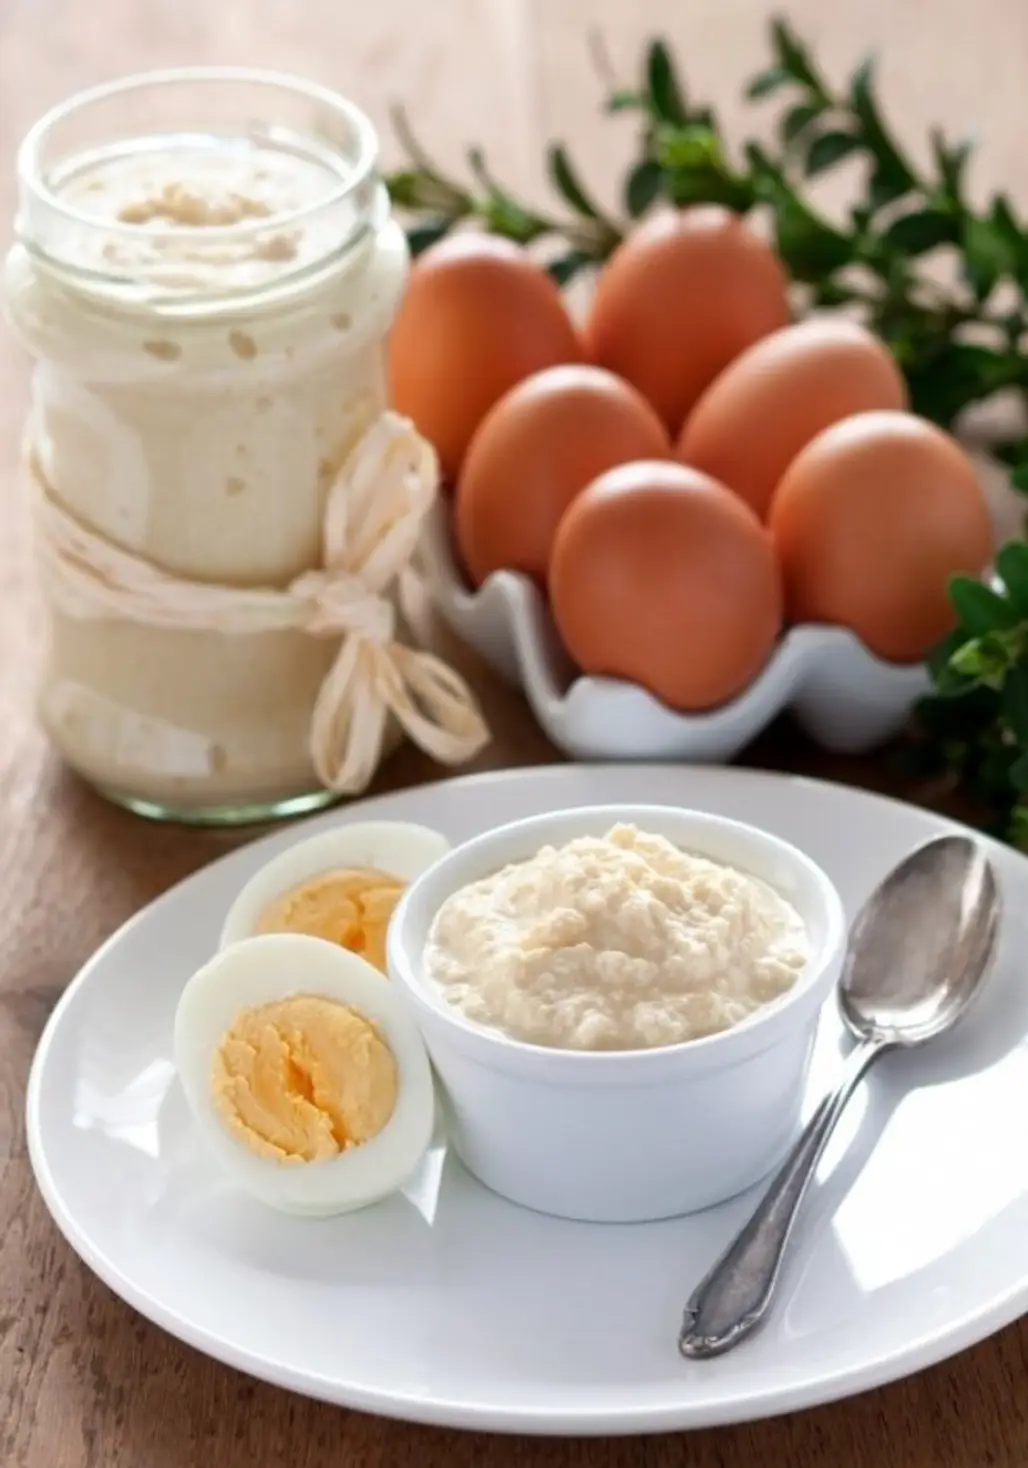 Smear Horseradish on Your Next Hard-Boiled Egg